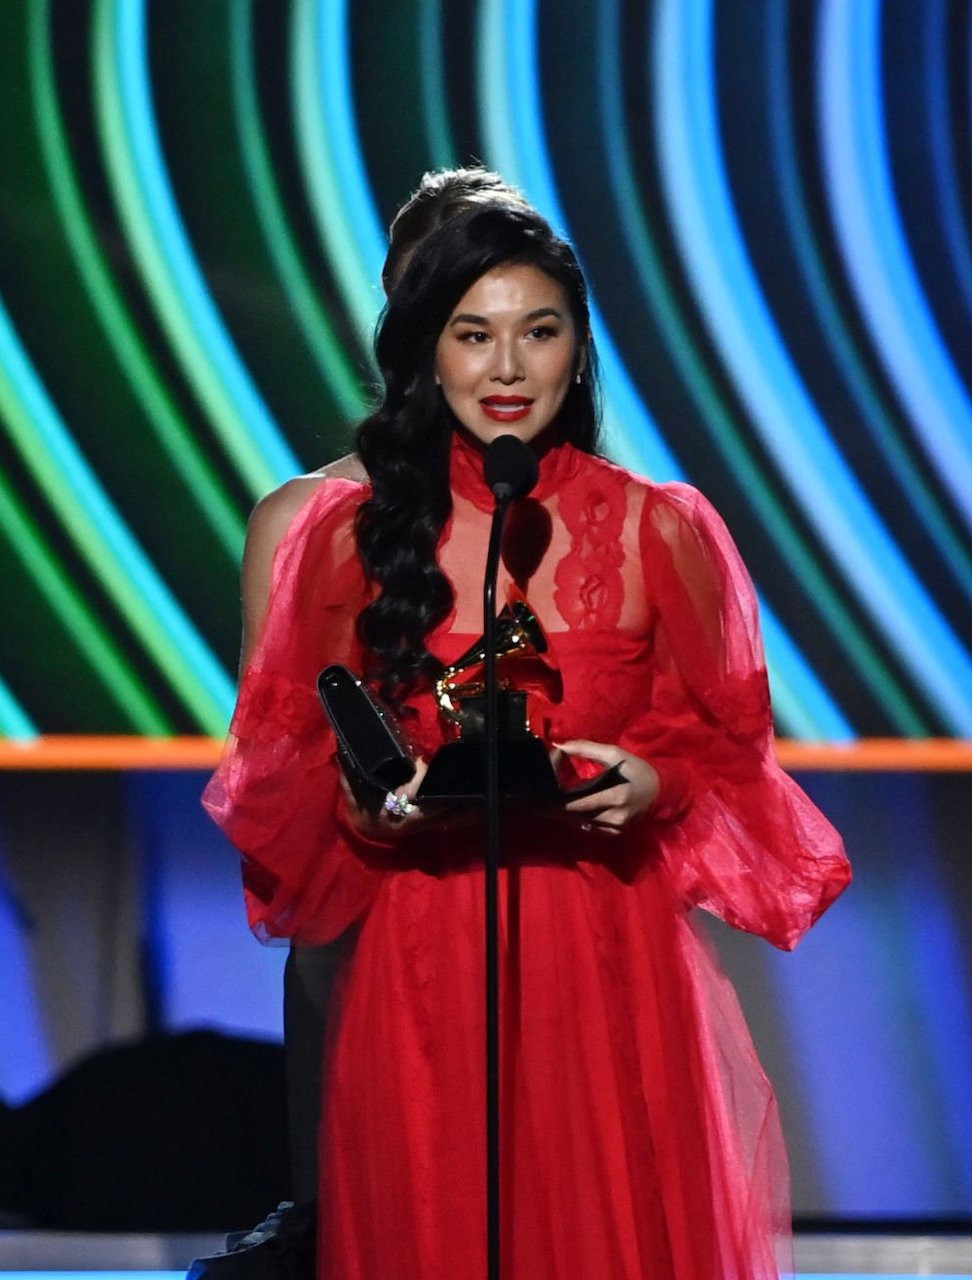 Sangeeta Kaur phát biểu khi nhận giải. Cô là nghệ sĩ gốc Việt đầu tiên được đề cử giải Grammy ở hạng mục Best Classical Solo Vocal Album và giành chiến thắng.